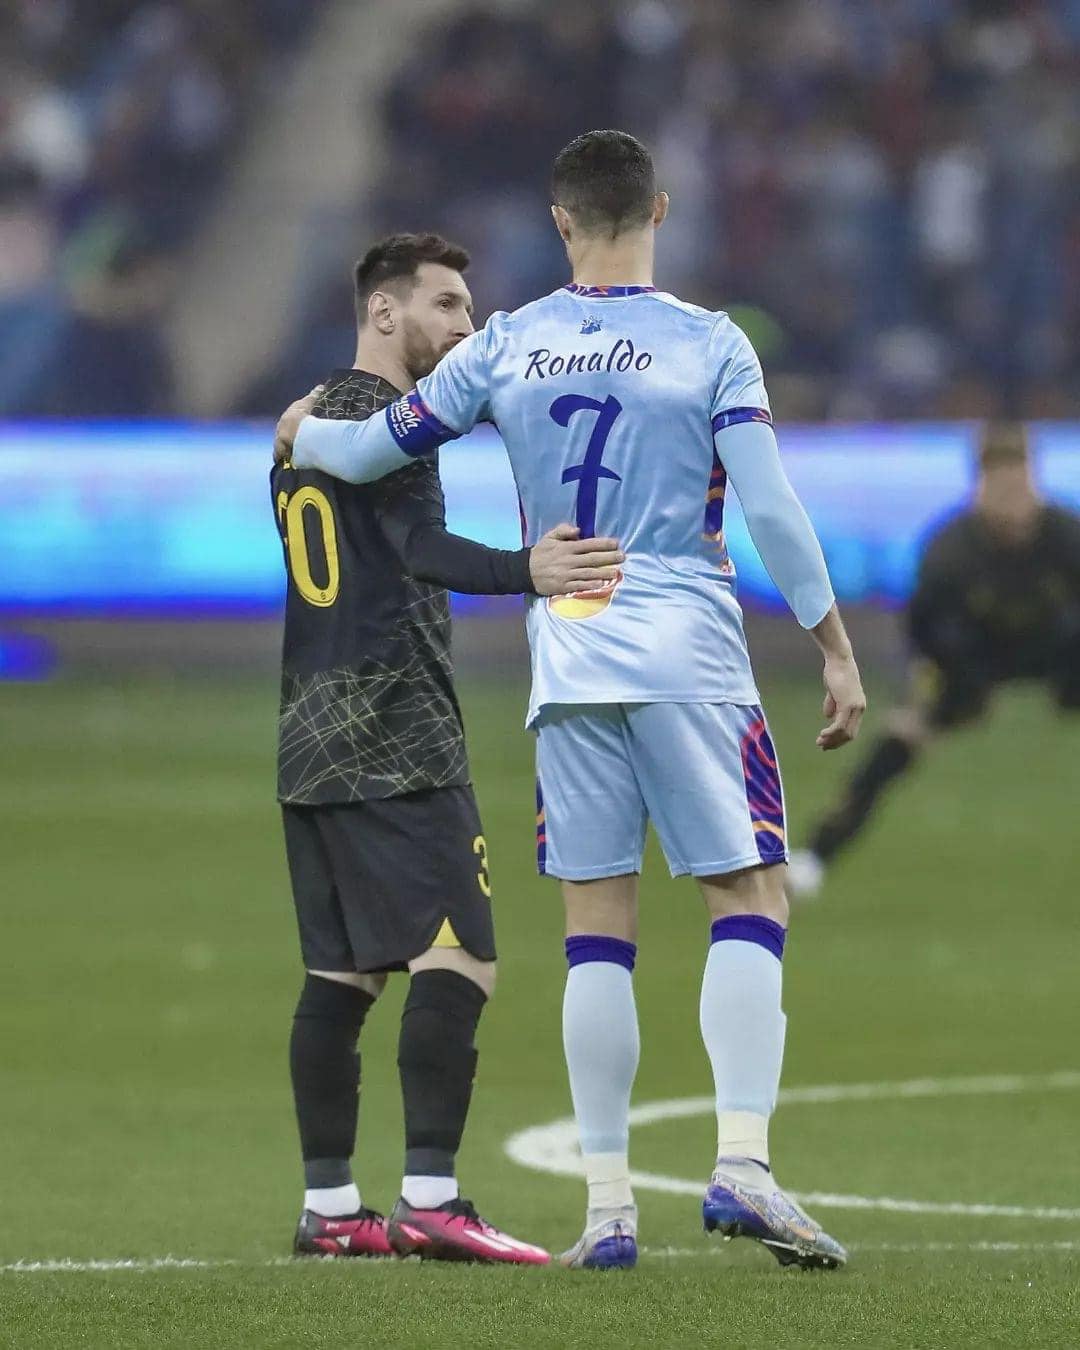 Cả Ronaldo và Messi đều ghi bàn, Neymar sút hỏng penalty trong trận giao hữu - Ảnh 3.